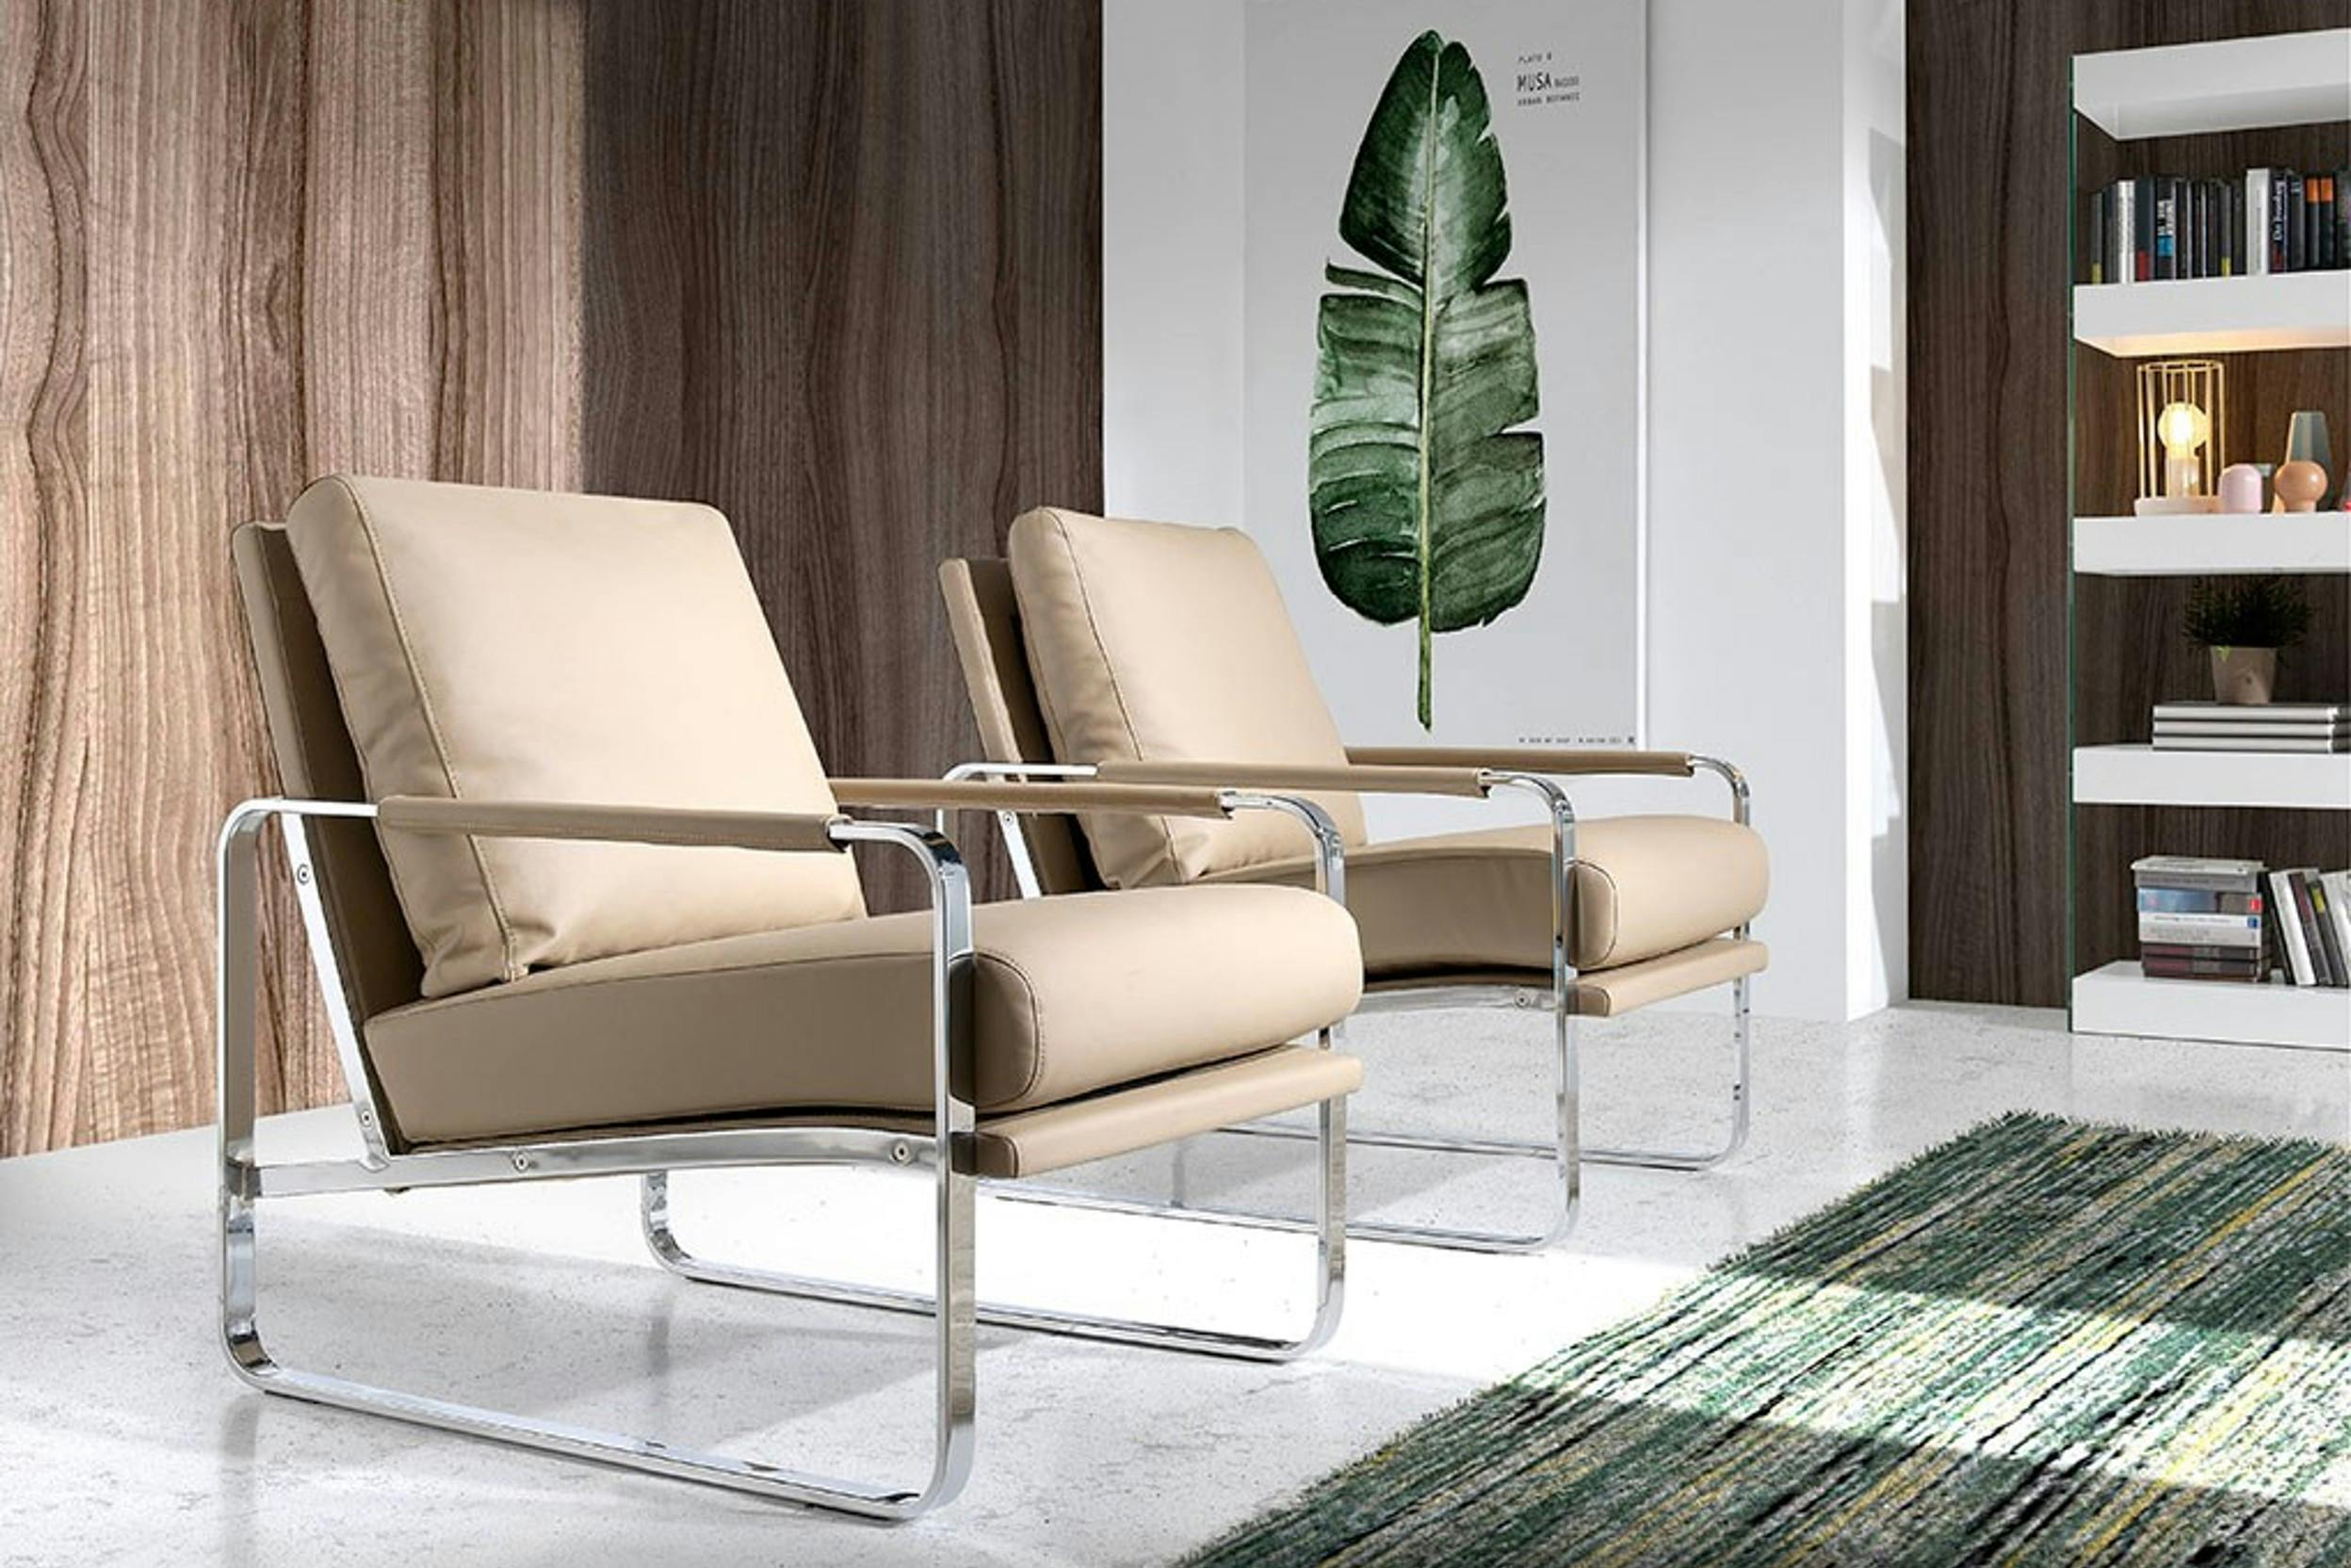 Zwei moderne Sessel mit Chromgestell in einem Raum mit grünem Teppich und Wandbild